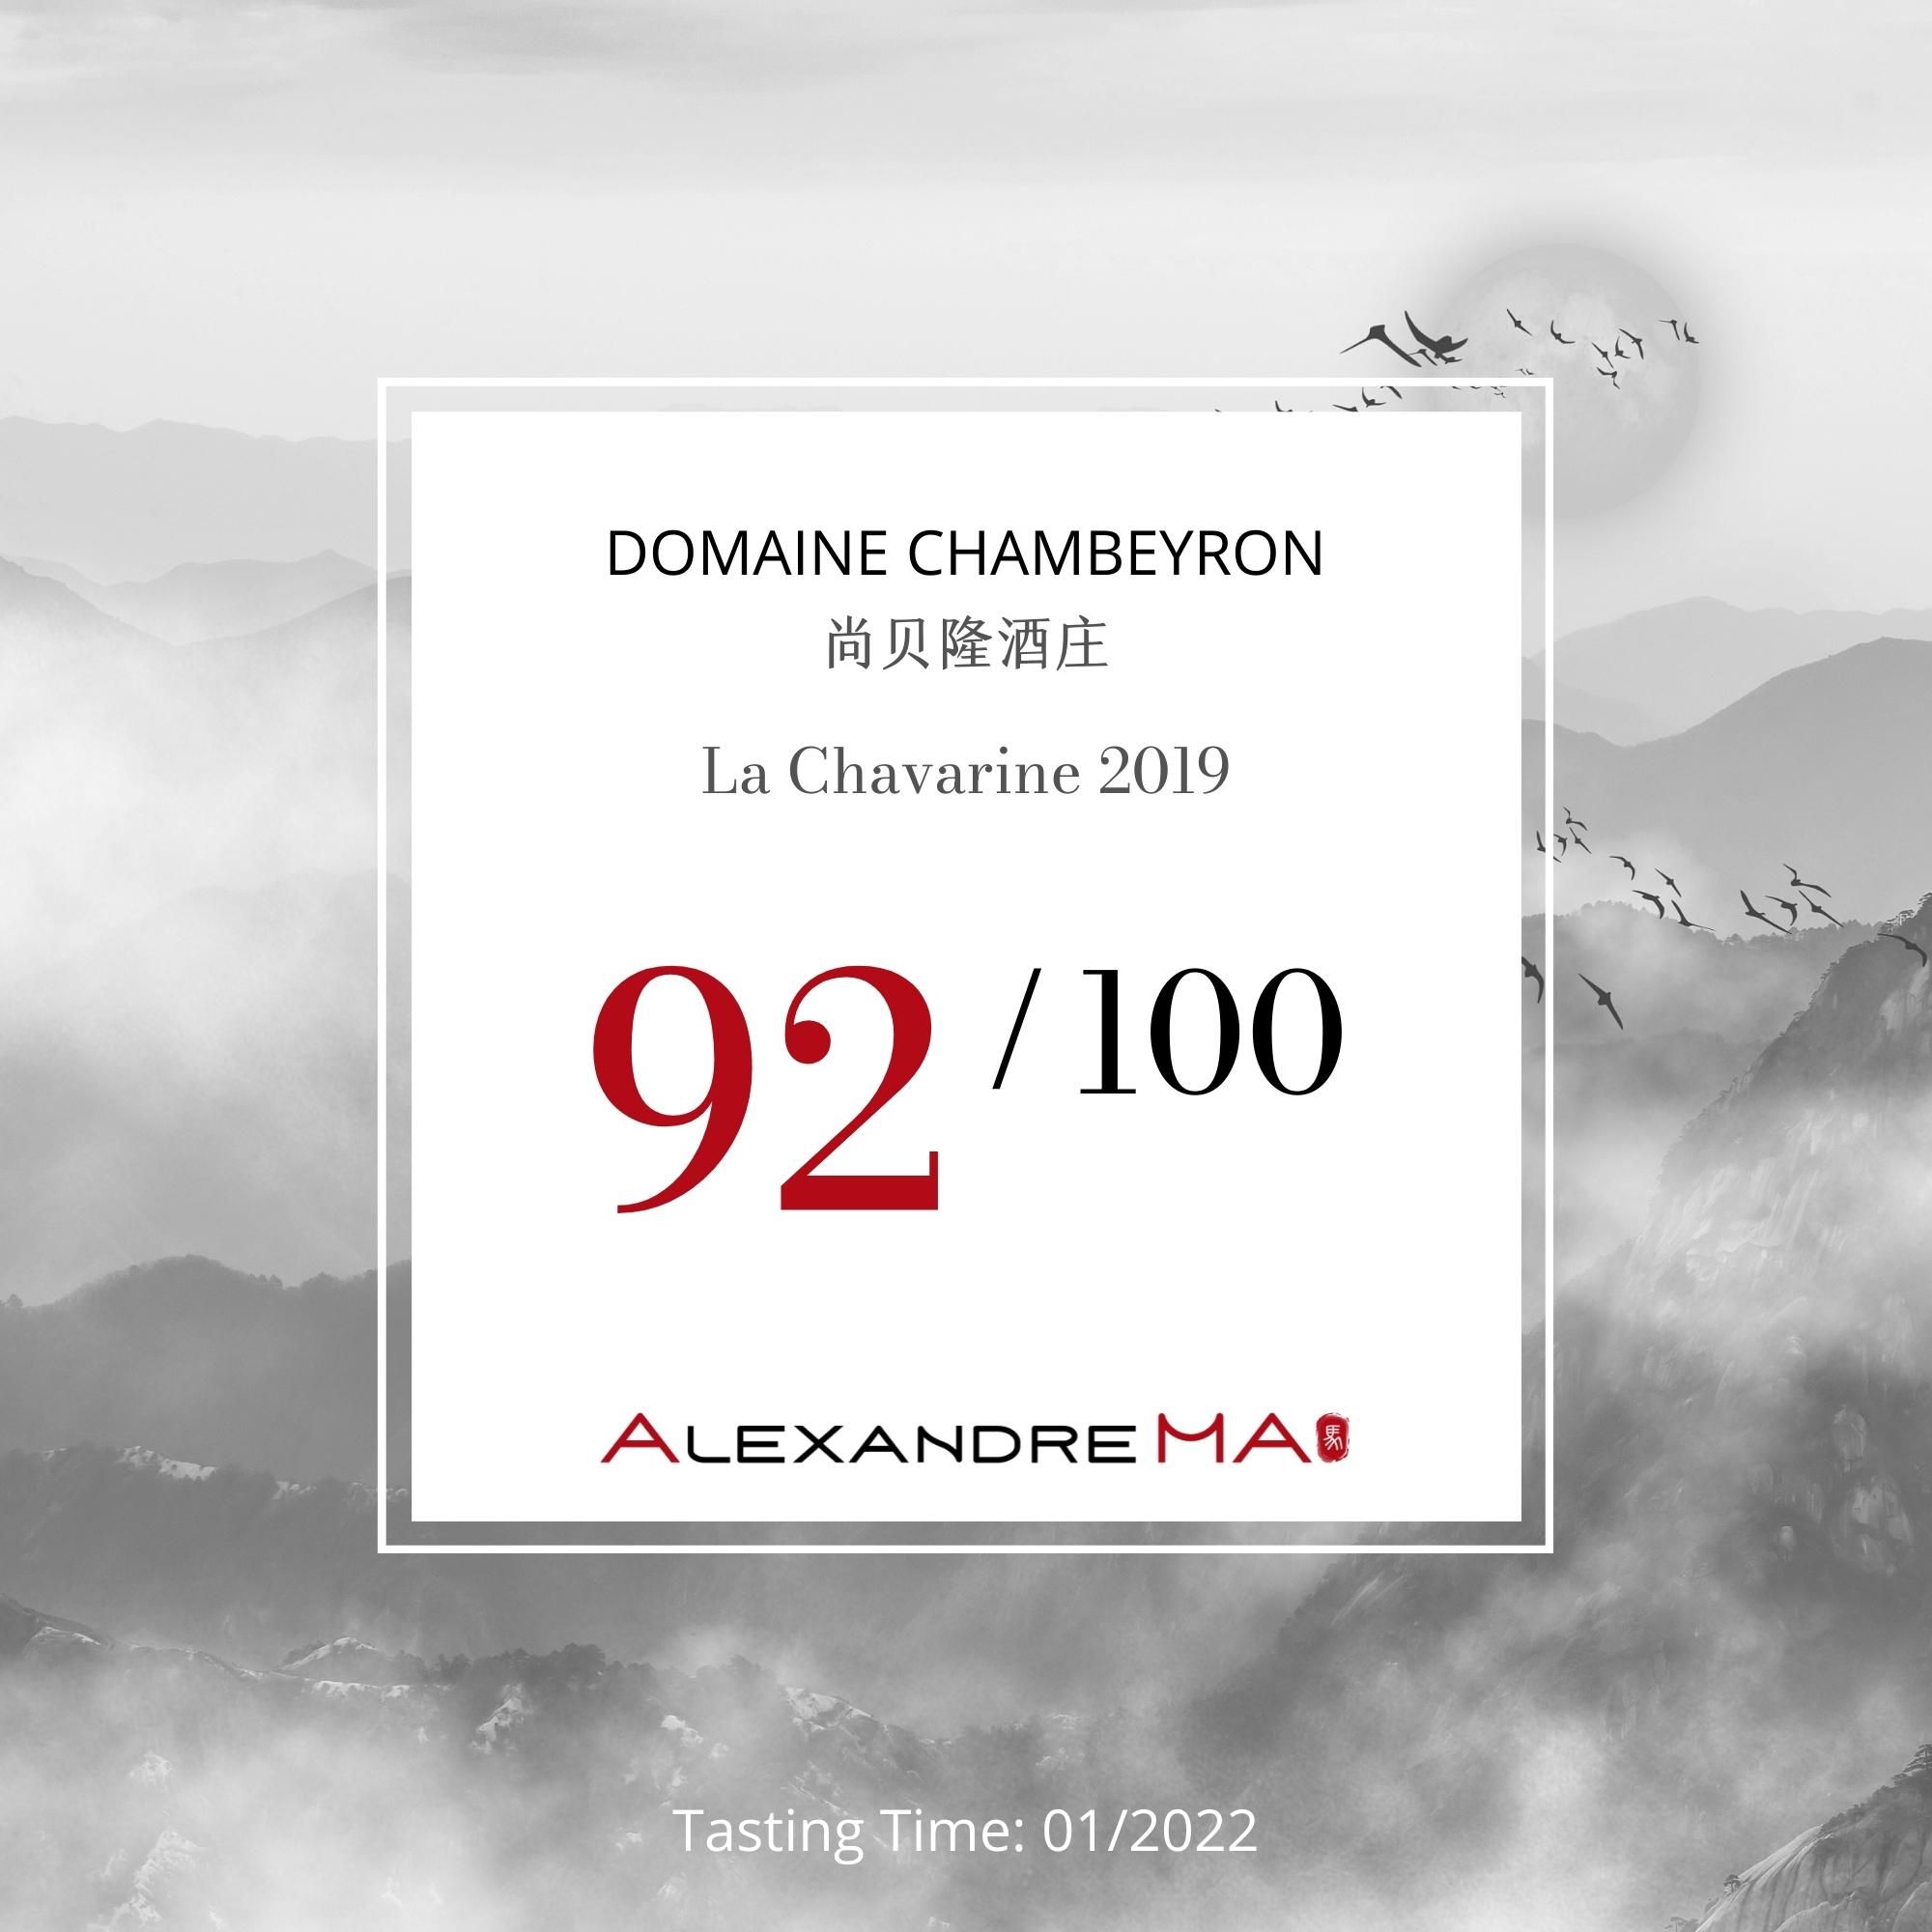 Domaine Chambeyron-La Chavarine 2019 - Alexandre MA